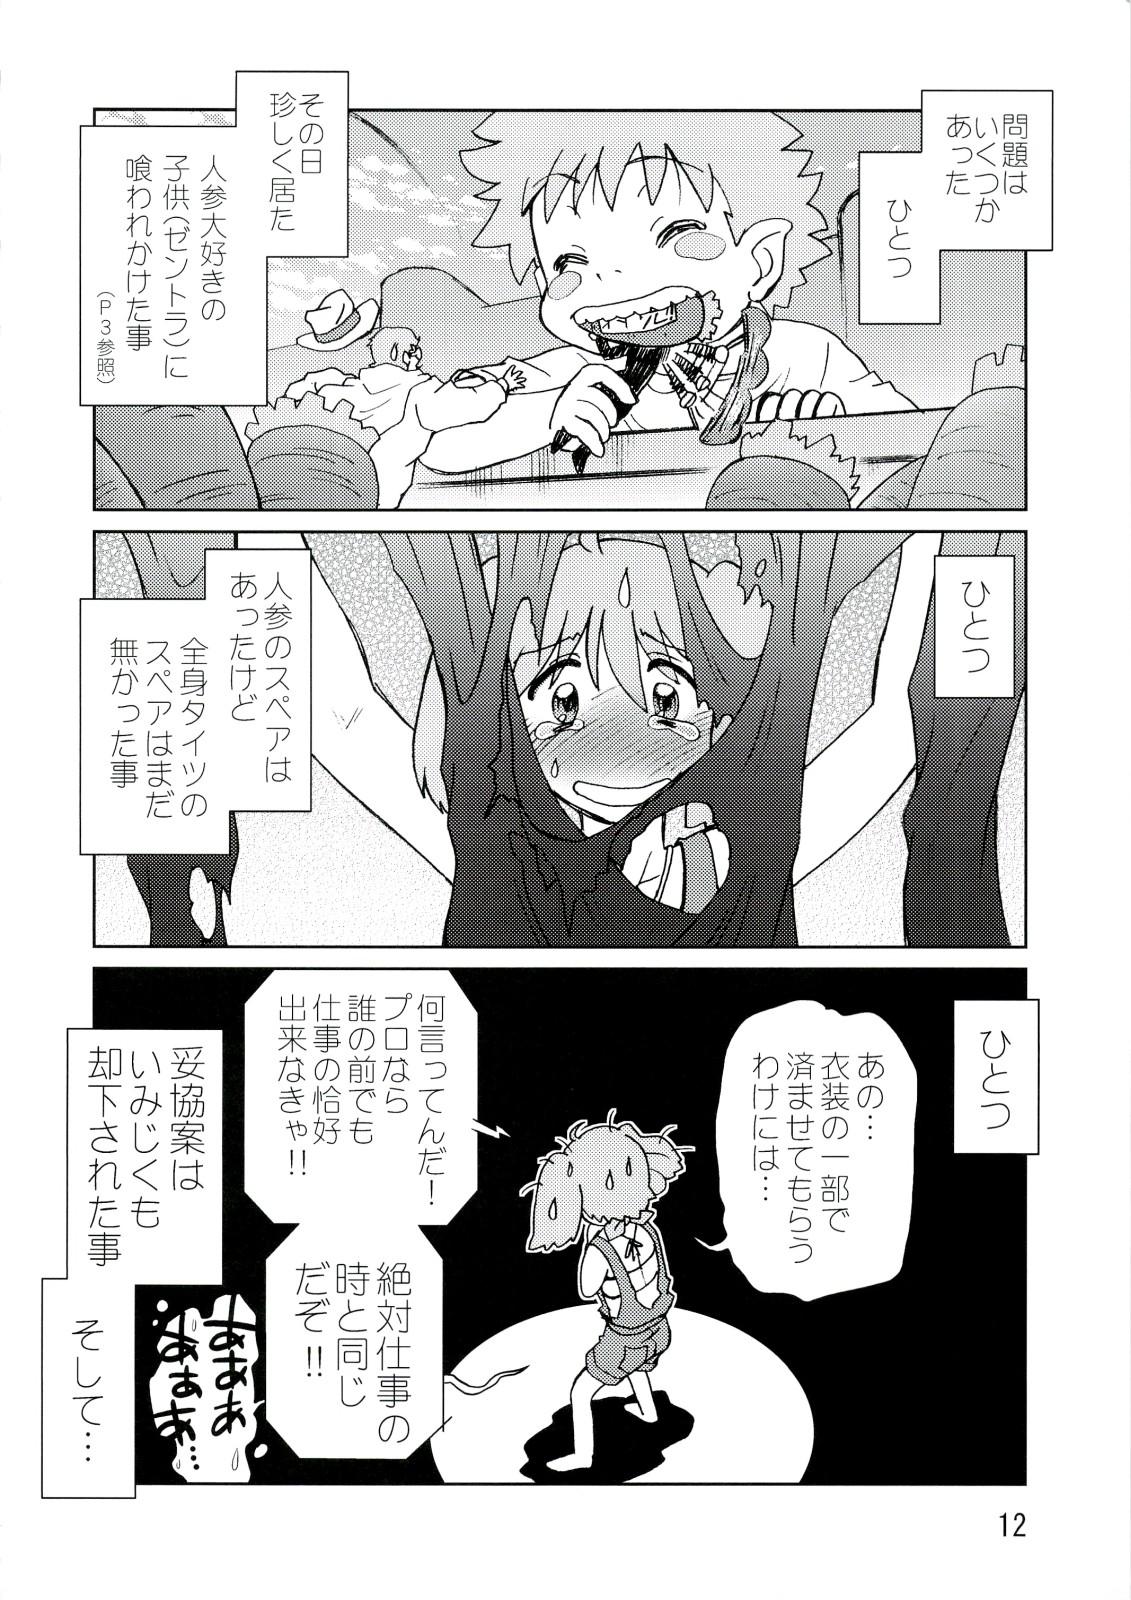 Bubblebutt Kishou Tenketsu 6 - Macross frontier Licking Pussy - Page 11